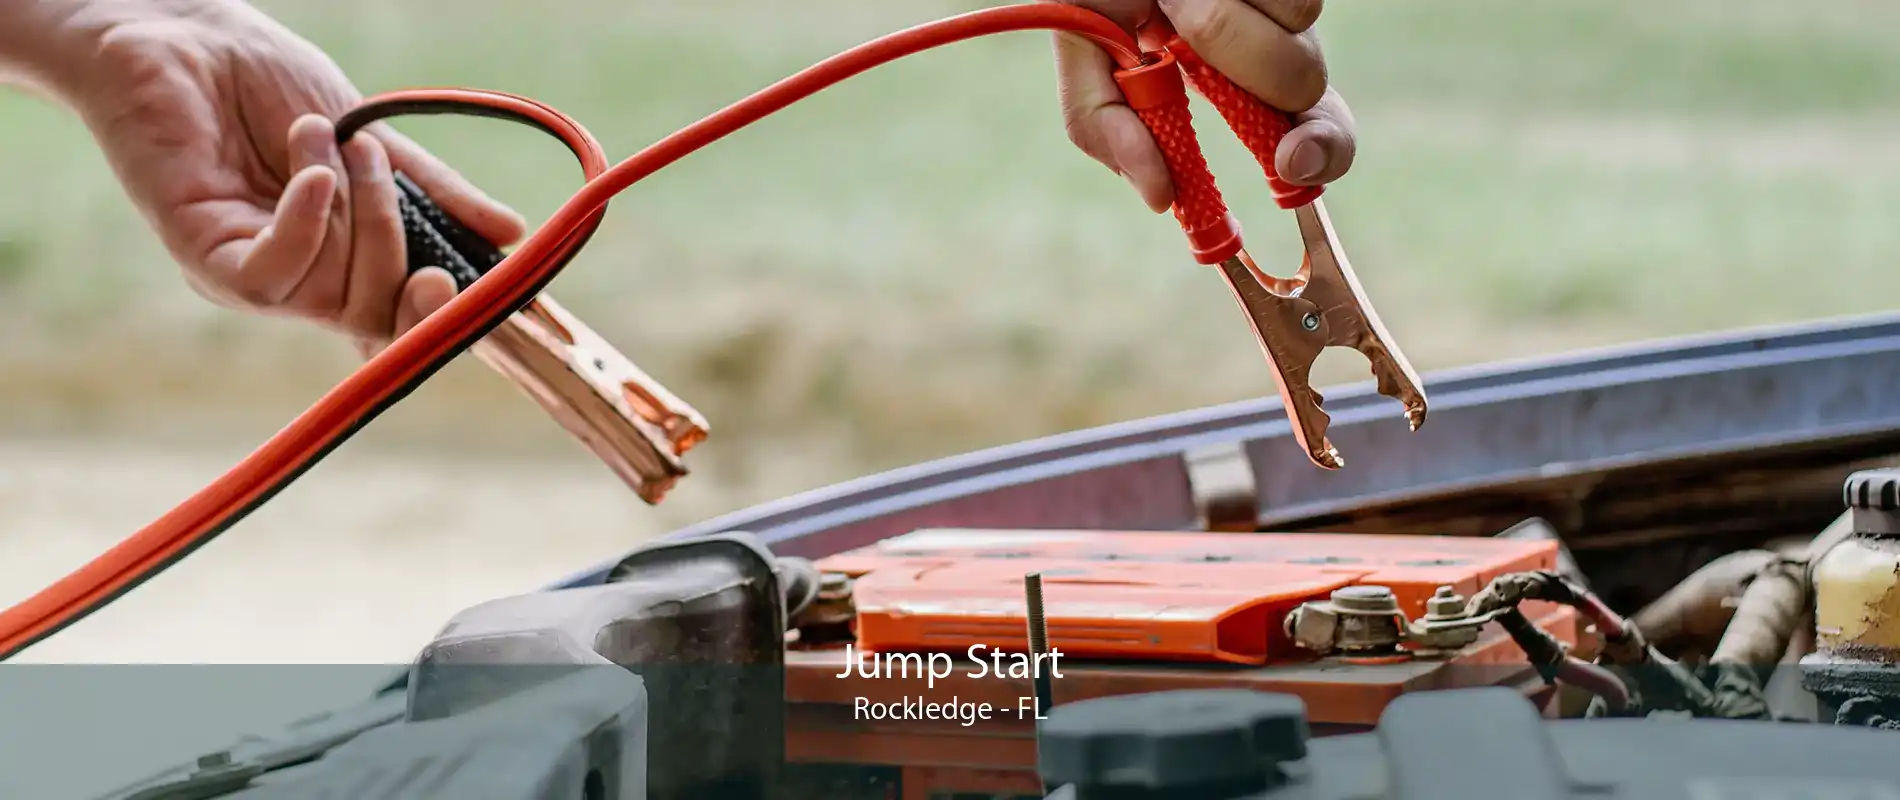 Jump Start Rockledge - FL